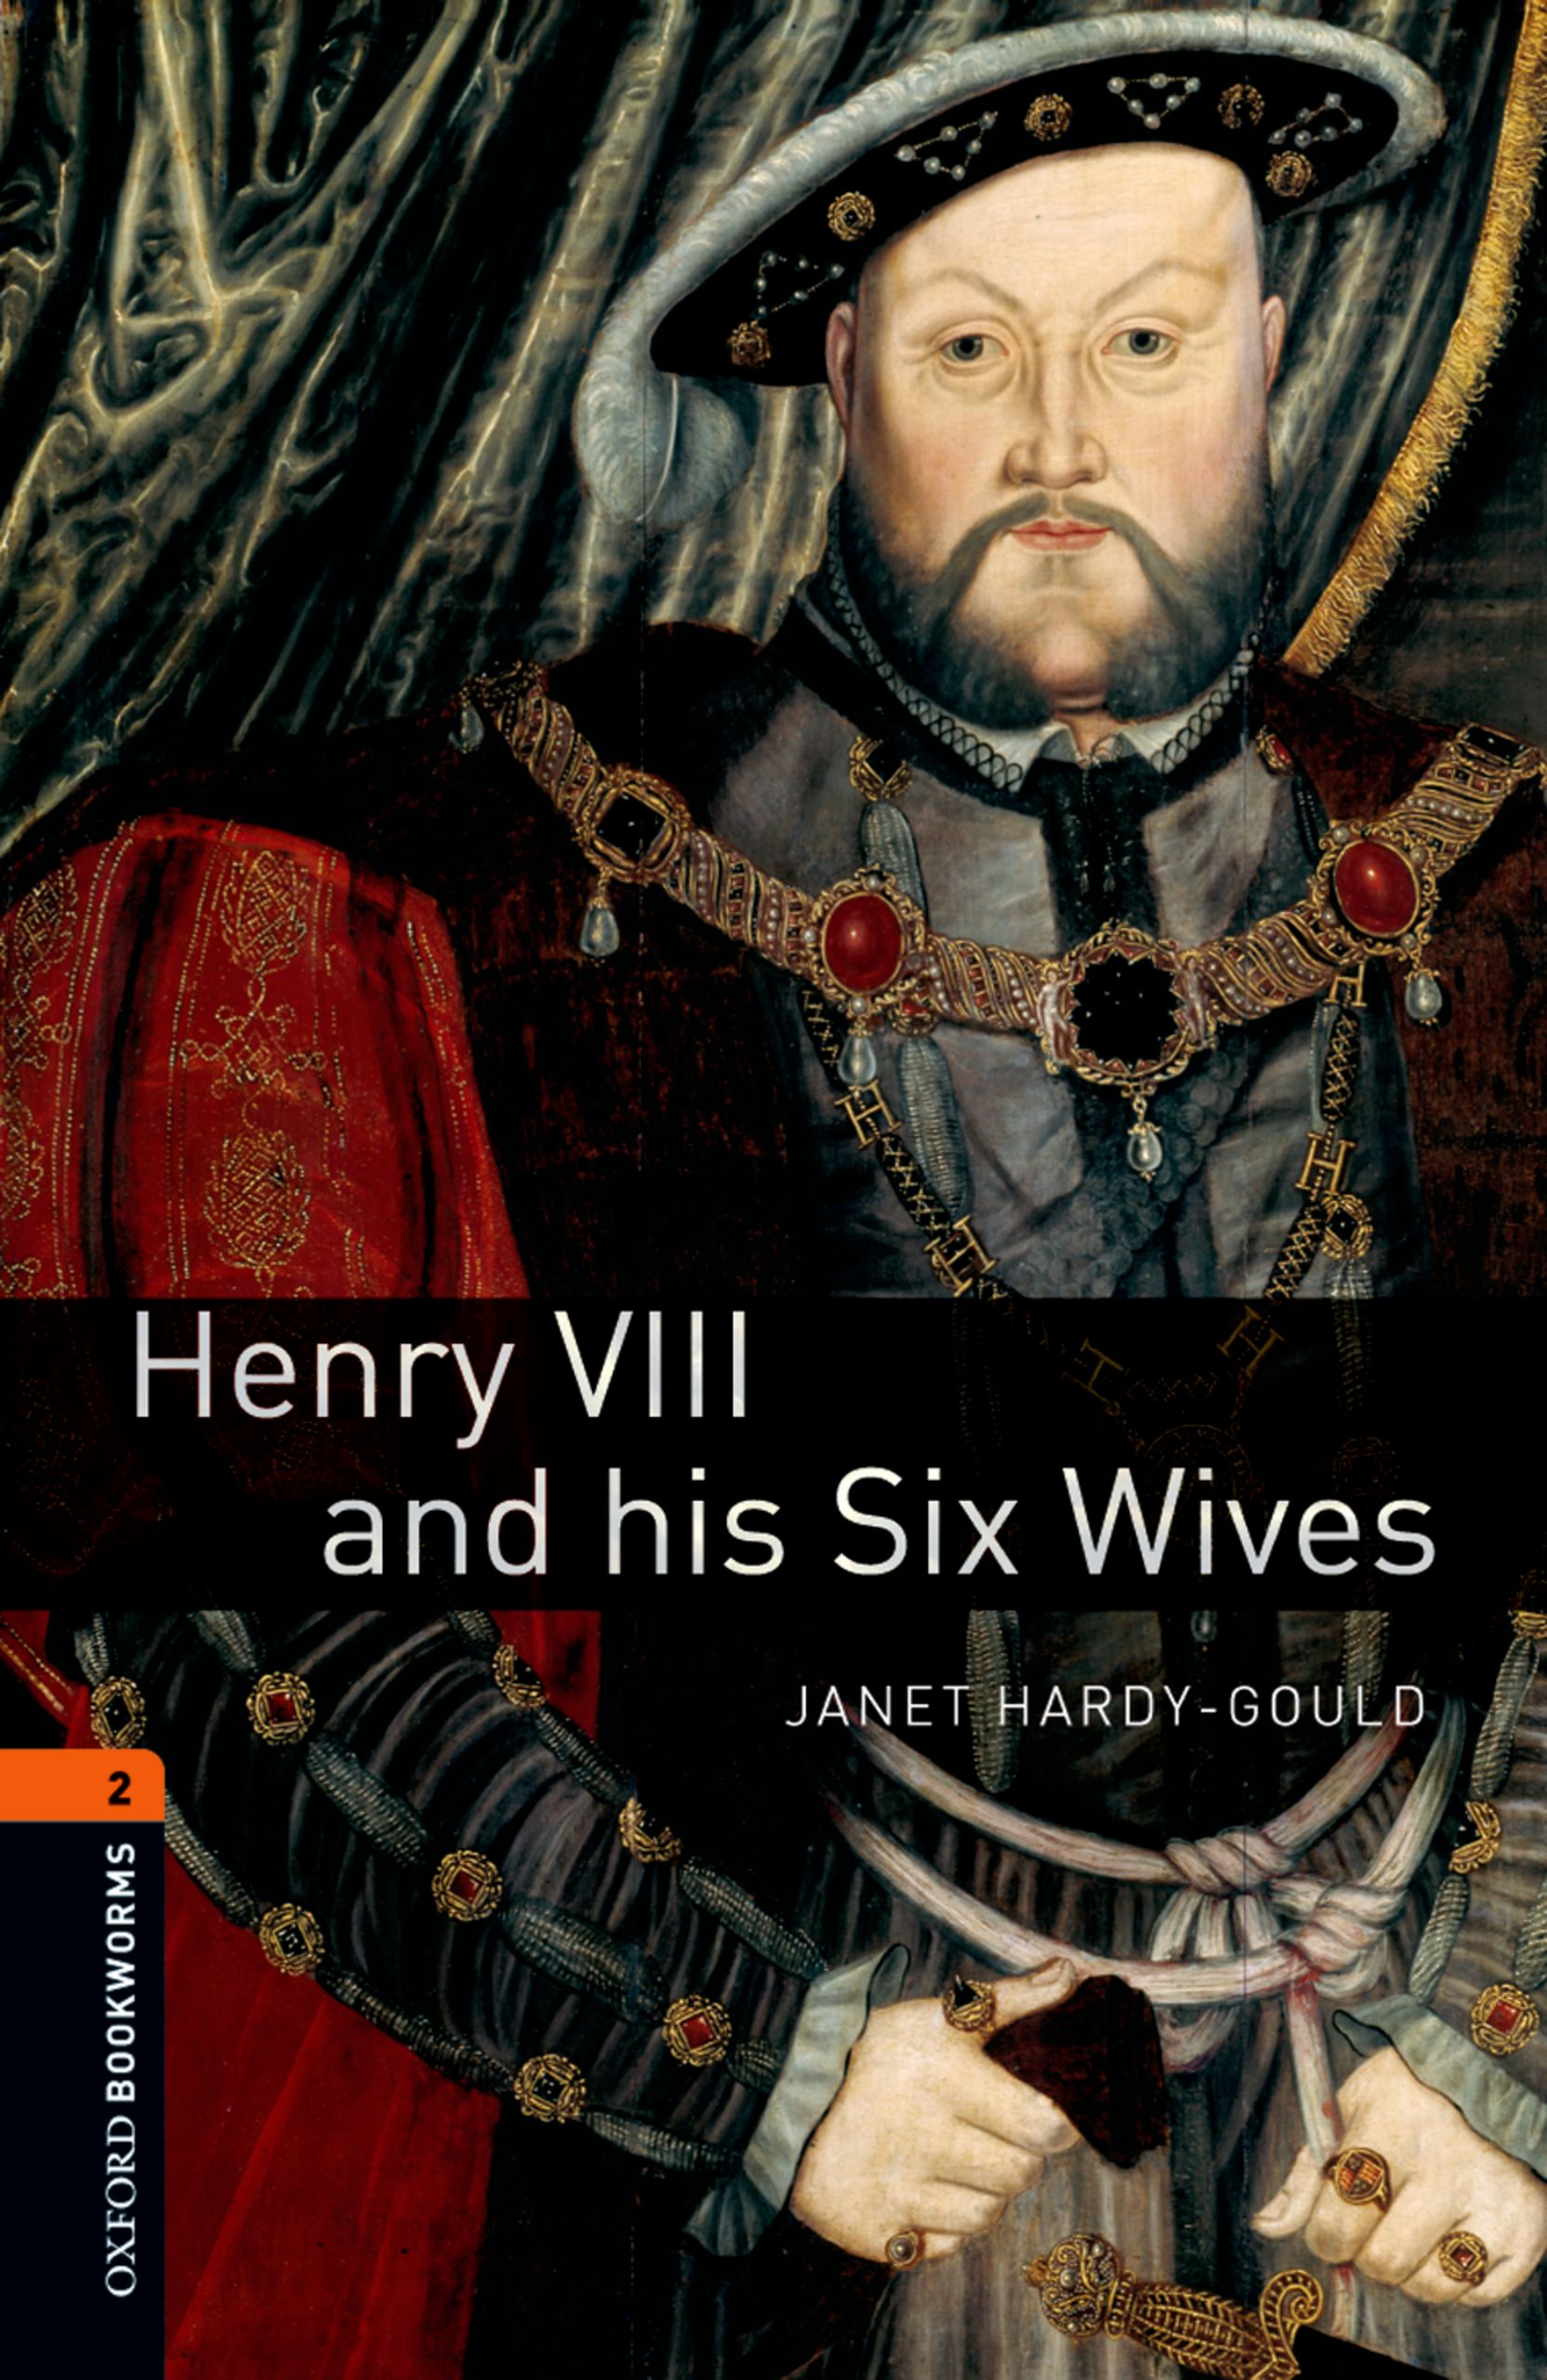 Книга Henry VIII and his Six Wives из серии , созданная Janet Hardy-Gould, может относится к жанру Иностранные языки, Иностранные языки, Зарубежная образовательная литература. Стоимость электронной книги Henry VIII and his Six Wives с идентификатором 23572754 составляет 405.87 руб.